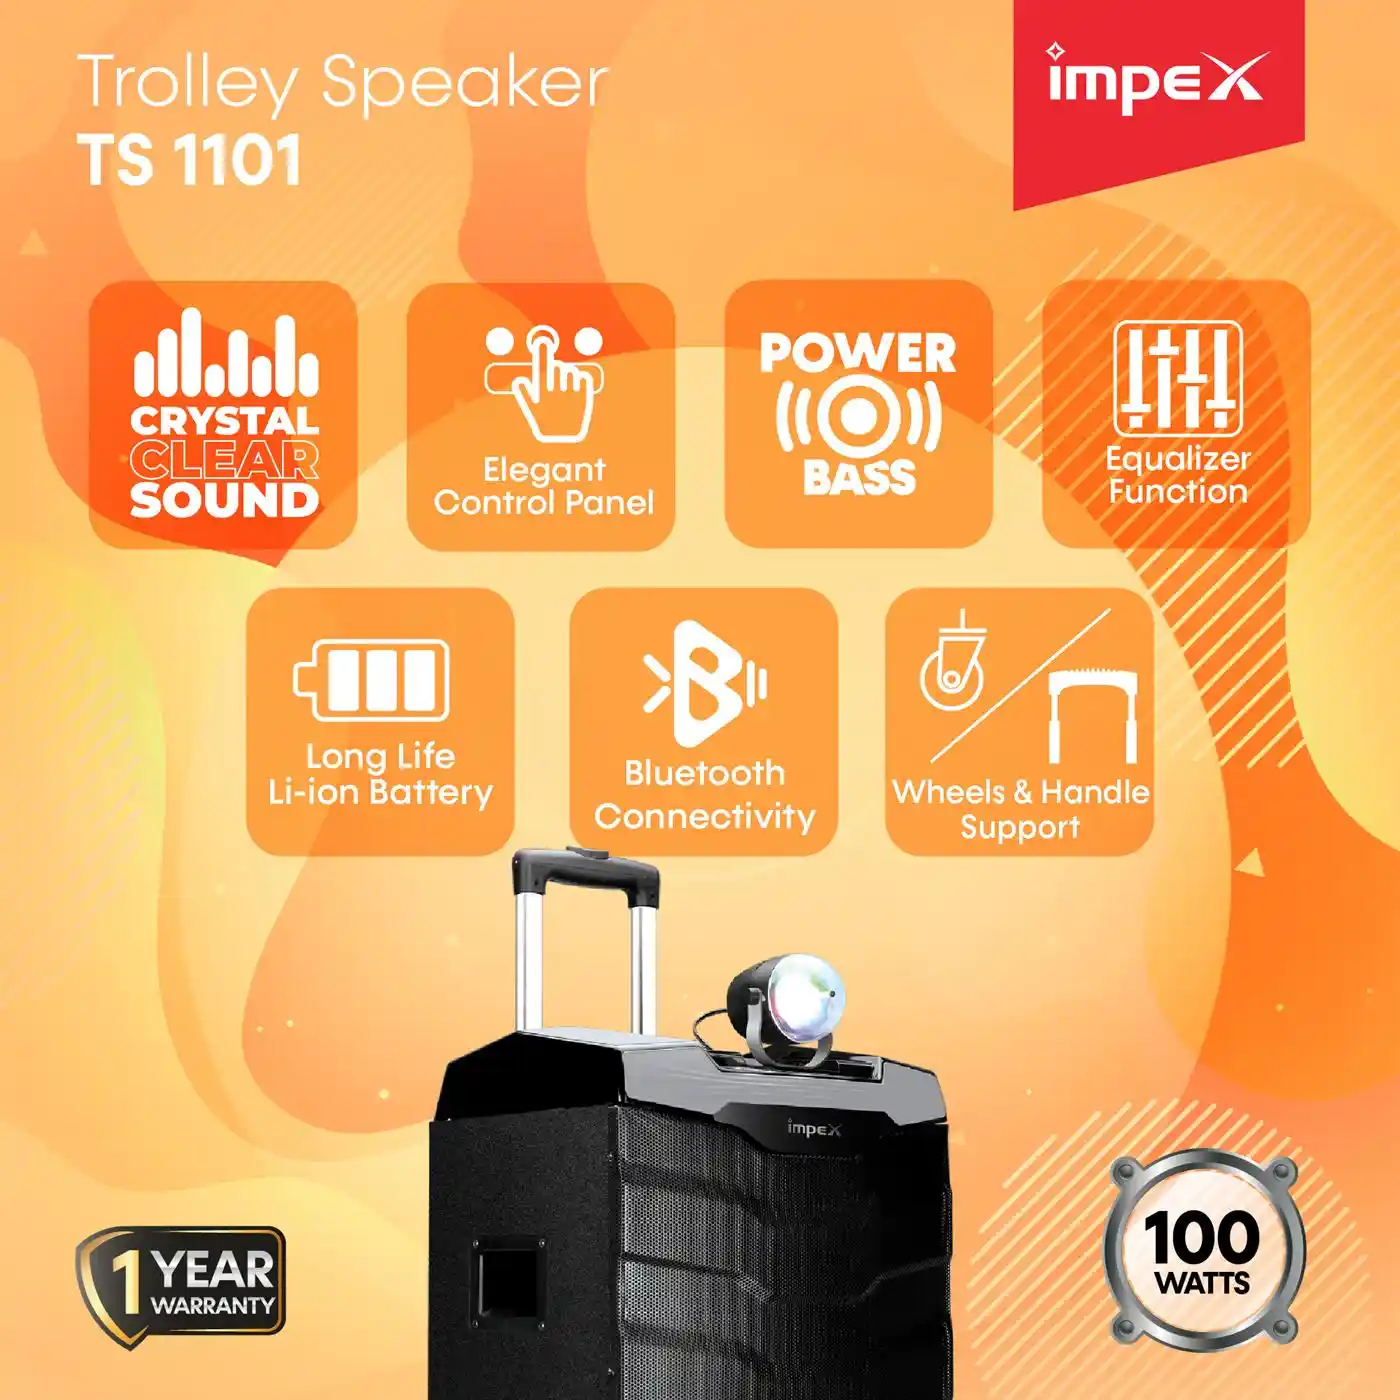 Trolley Speaker | TS 1101